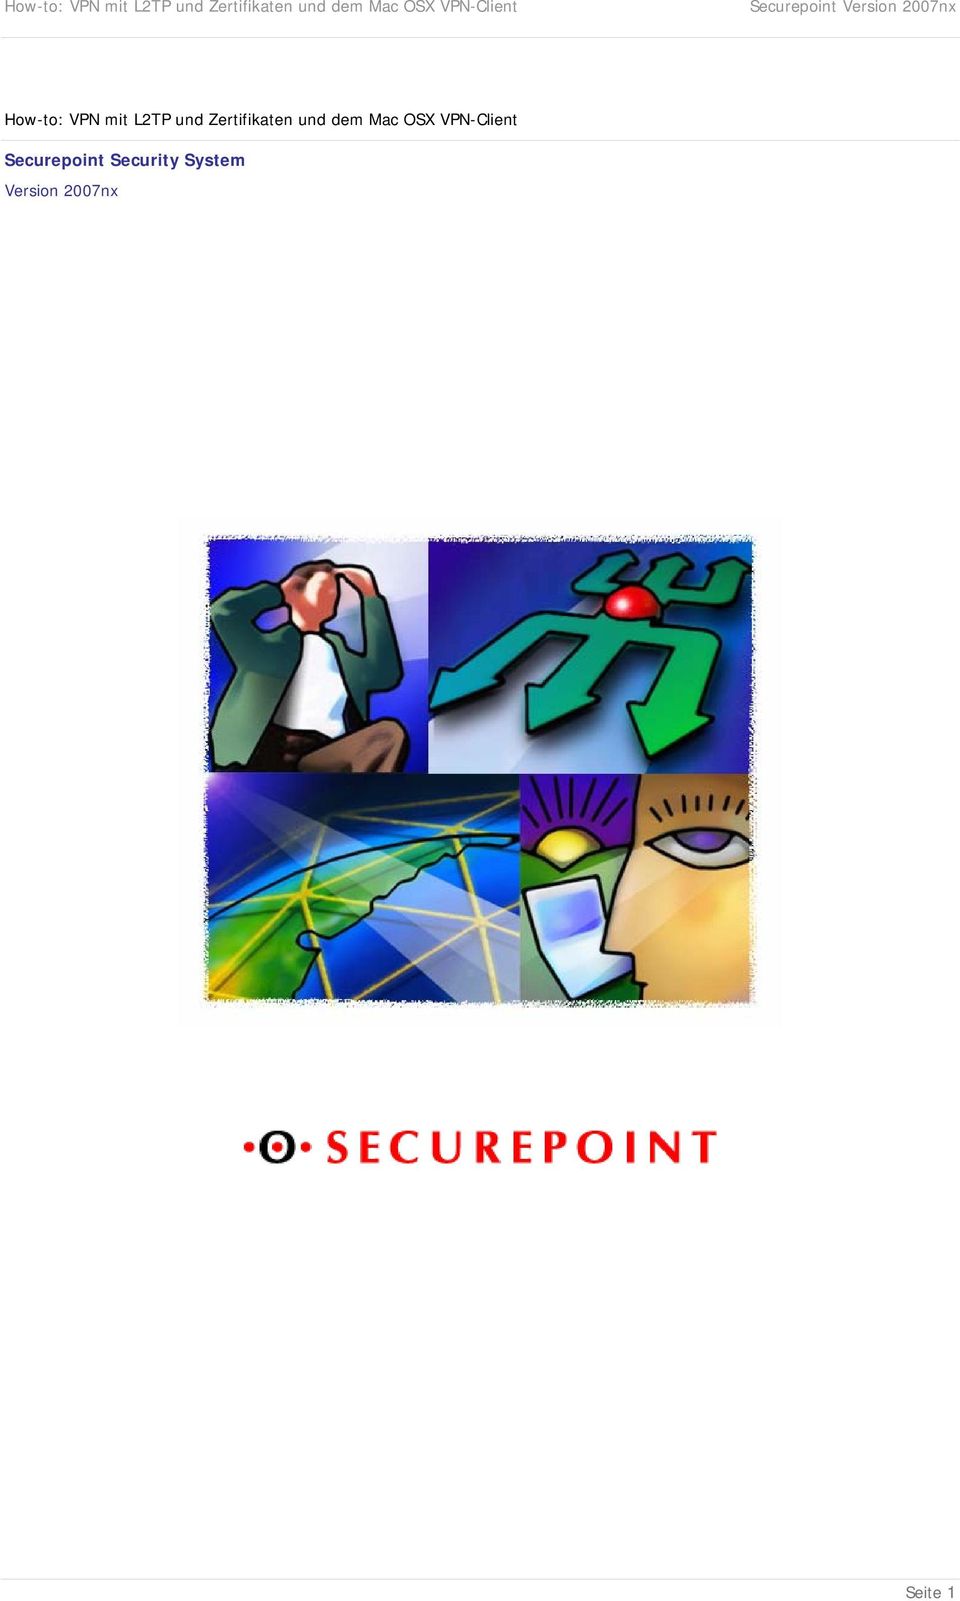 VPN-Client Securepoint